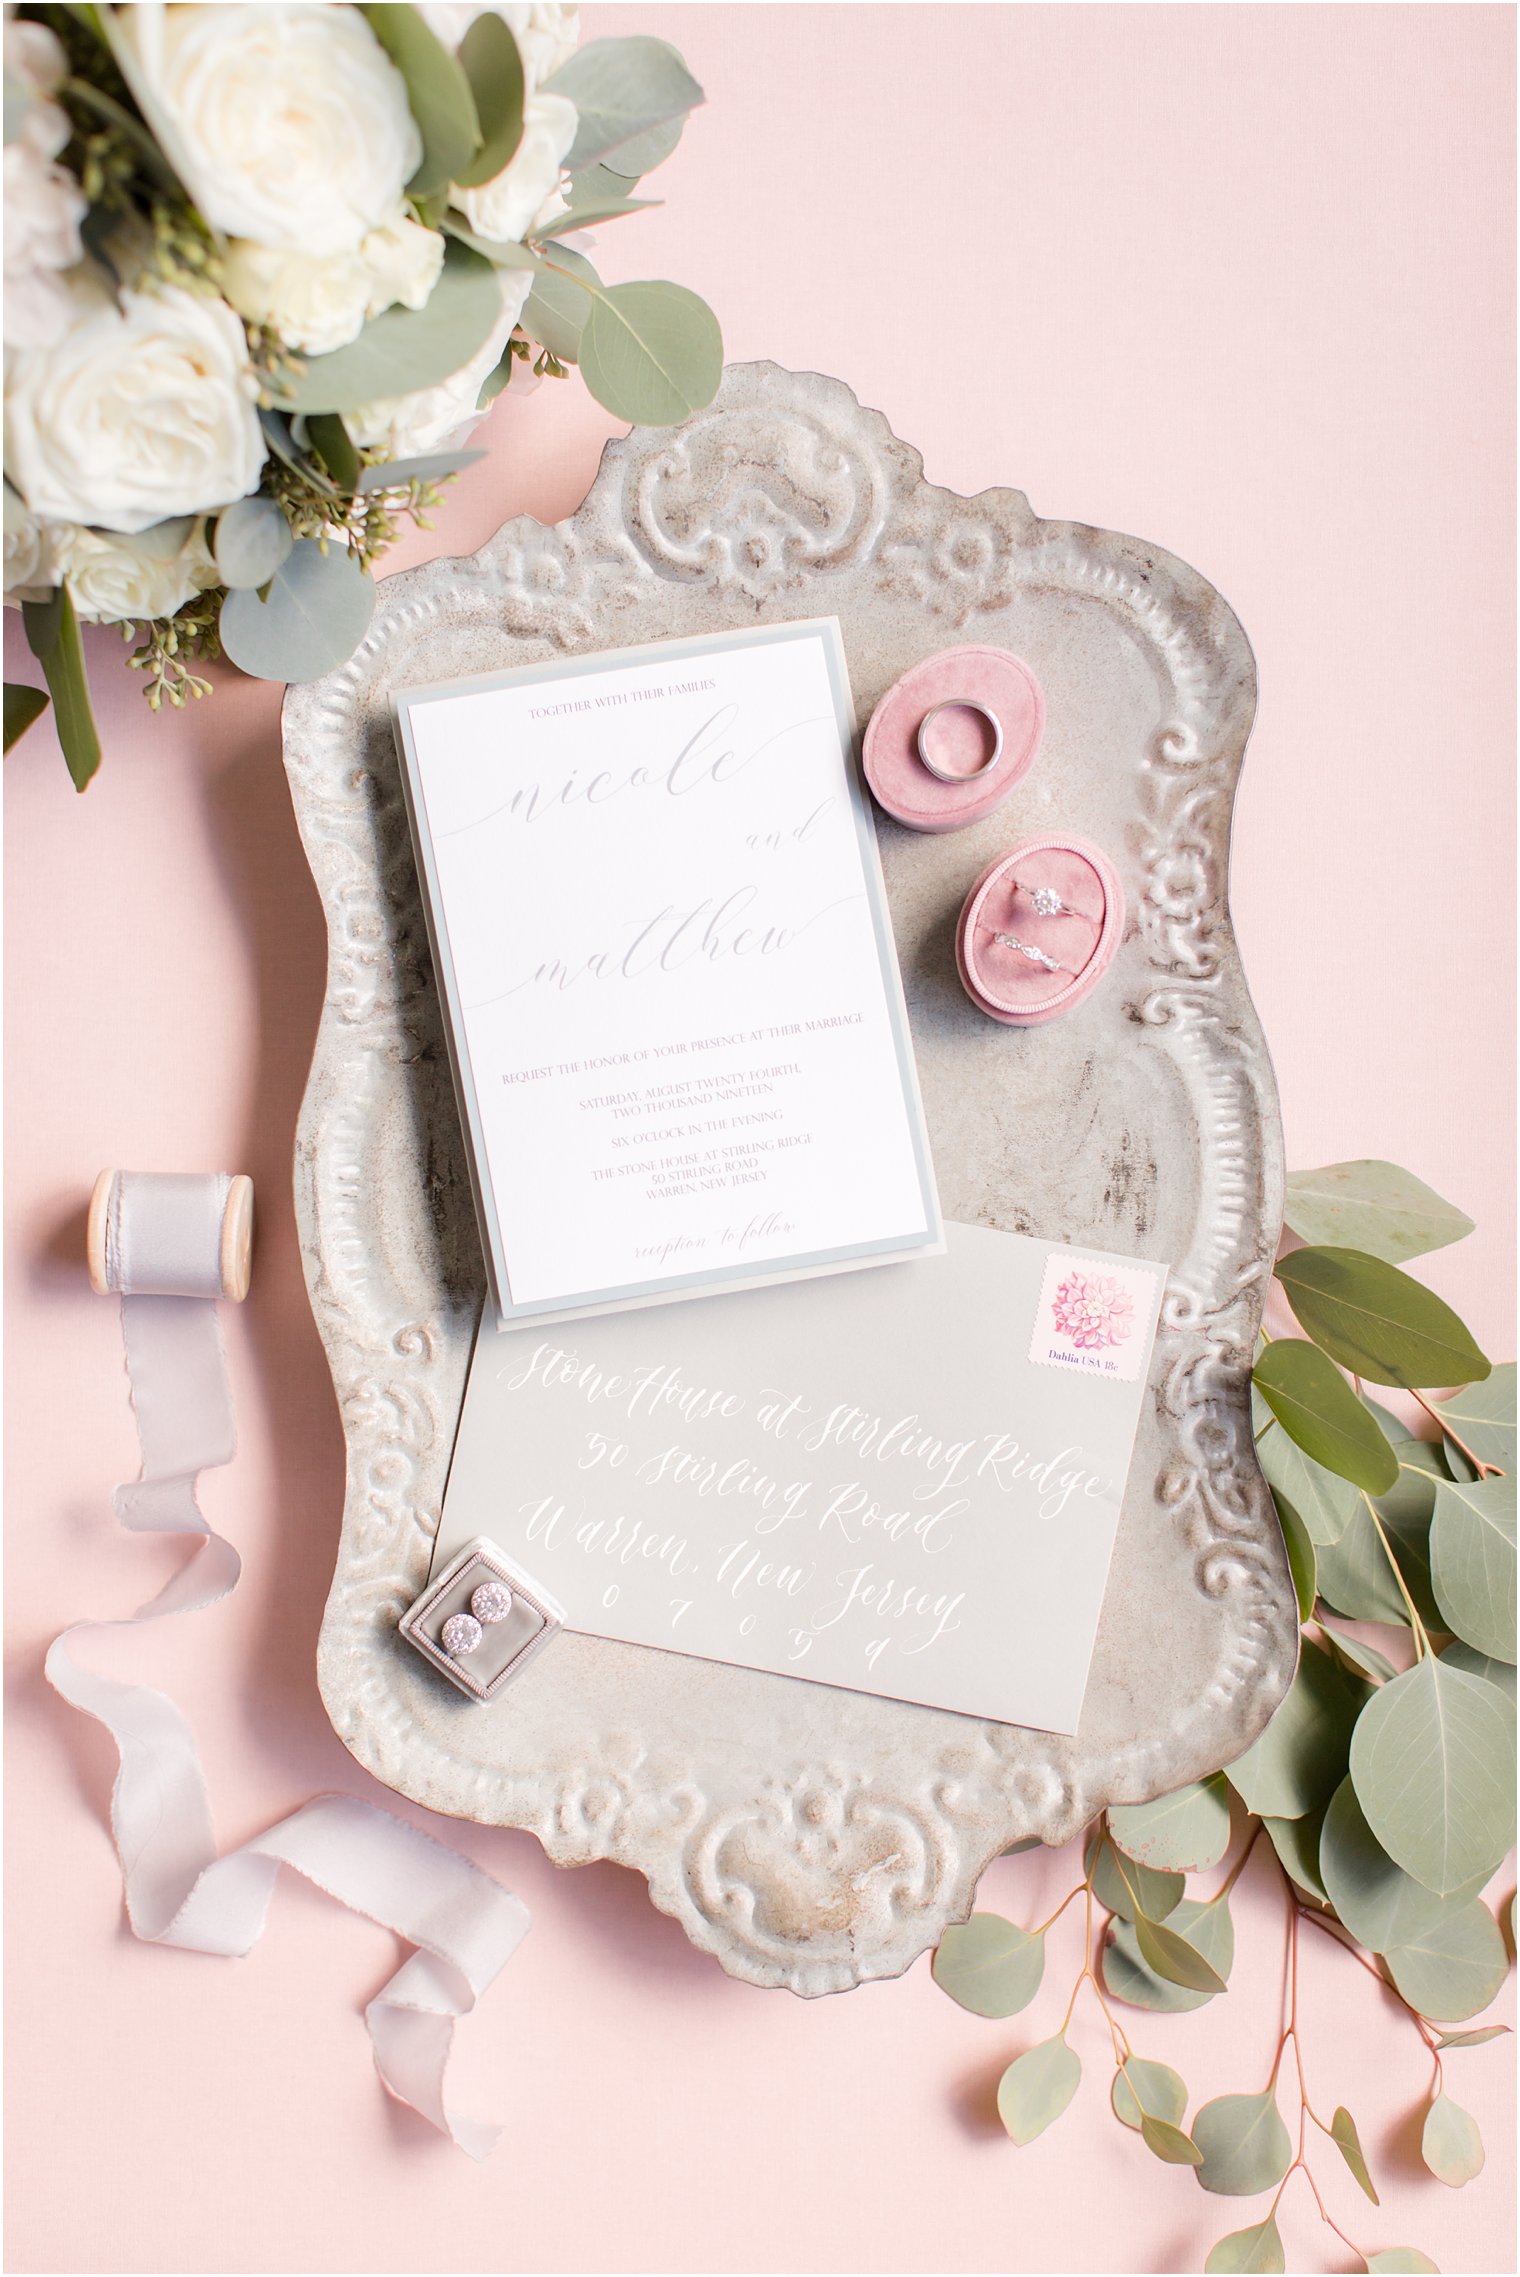 White and gray wedding invitation | Stone House at Stirling Ridge Wedding Photos by NJ Wedding Photographers Idalia Photography